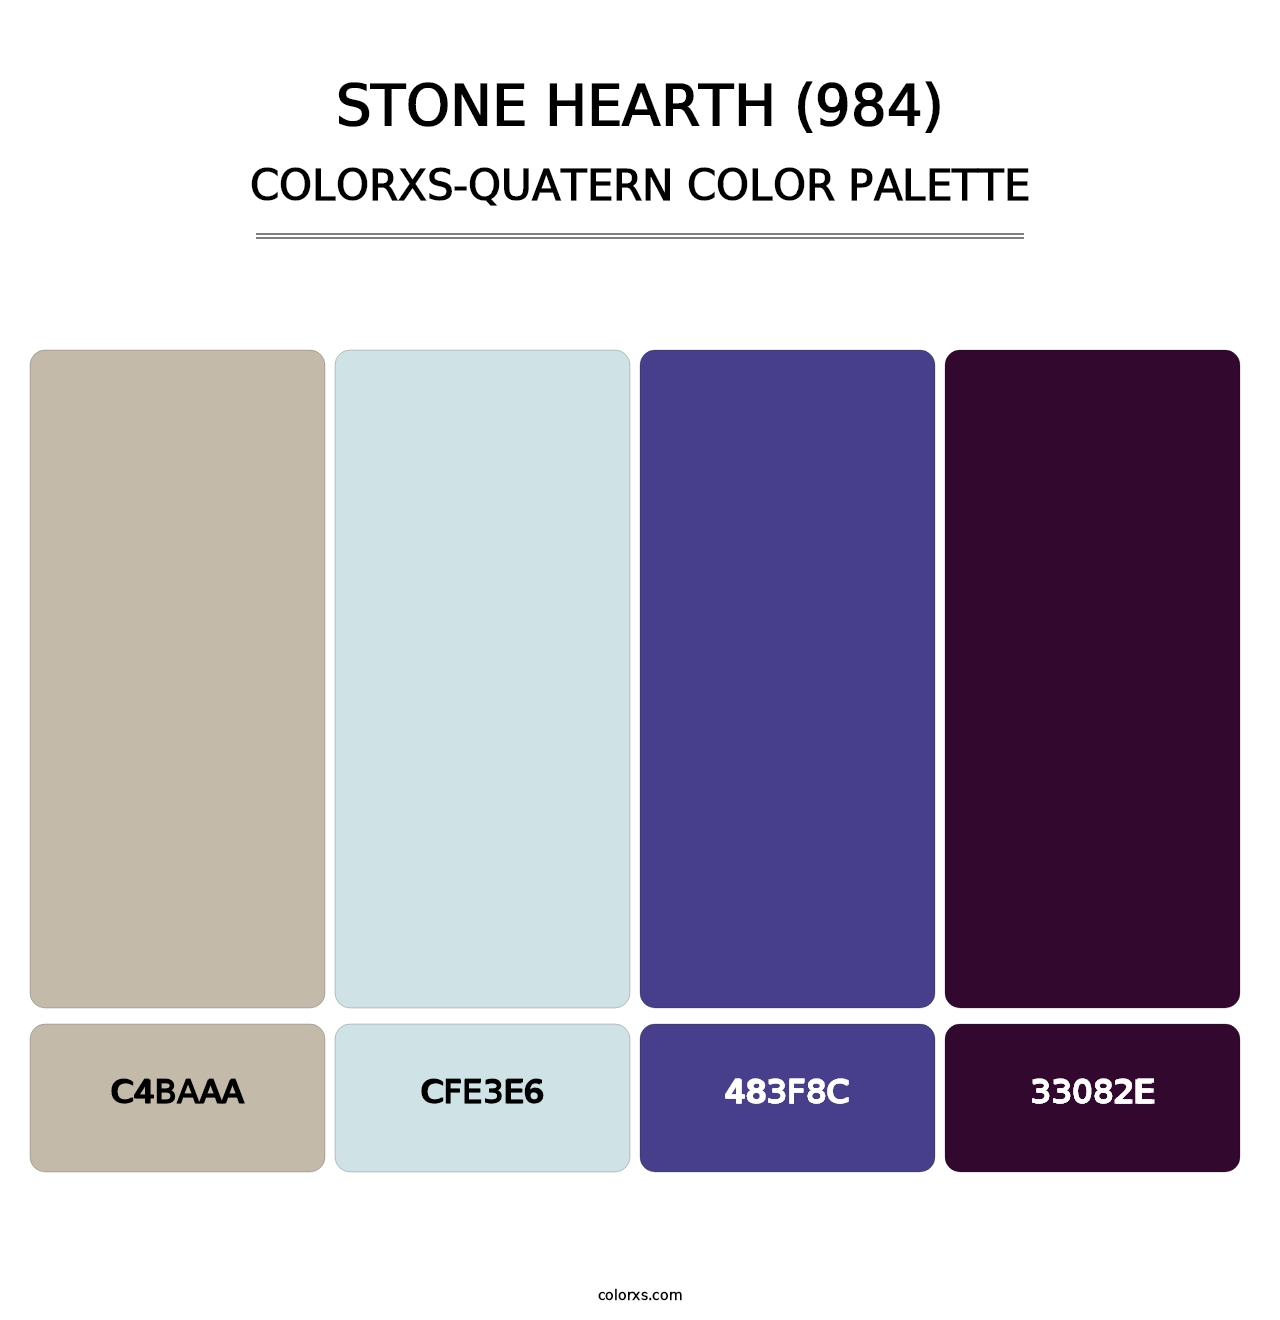 Stone Hearth (984) - Colorxs Quatern Palette